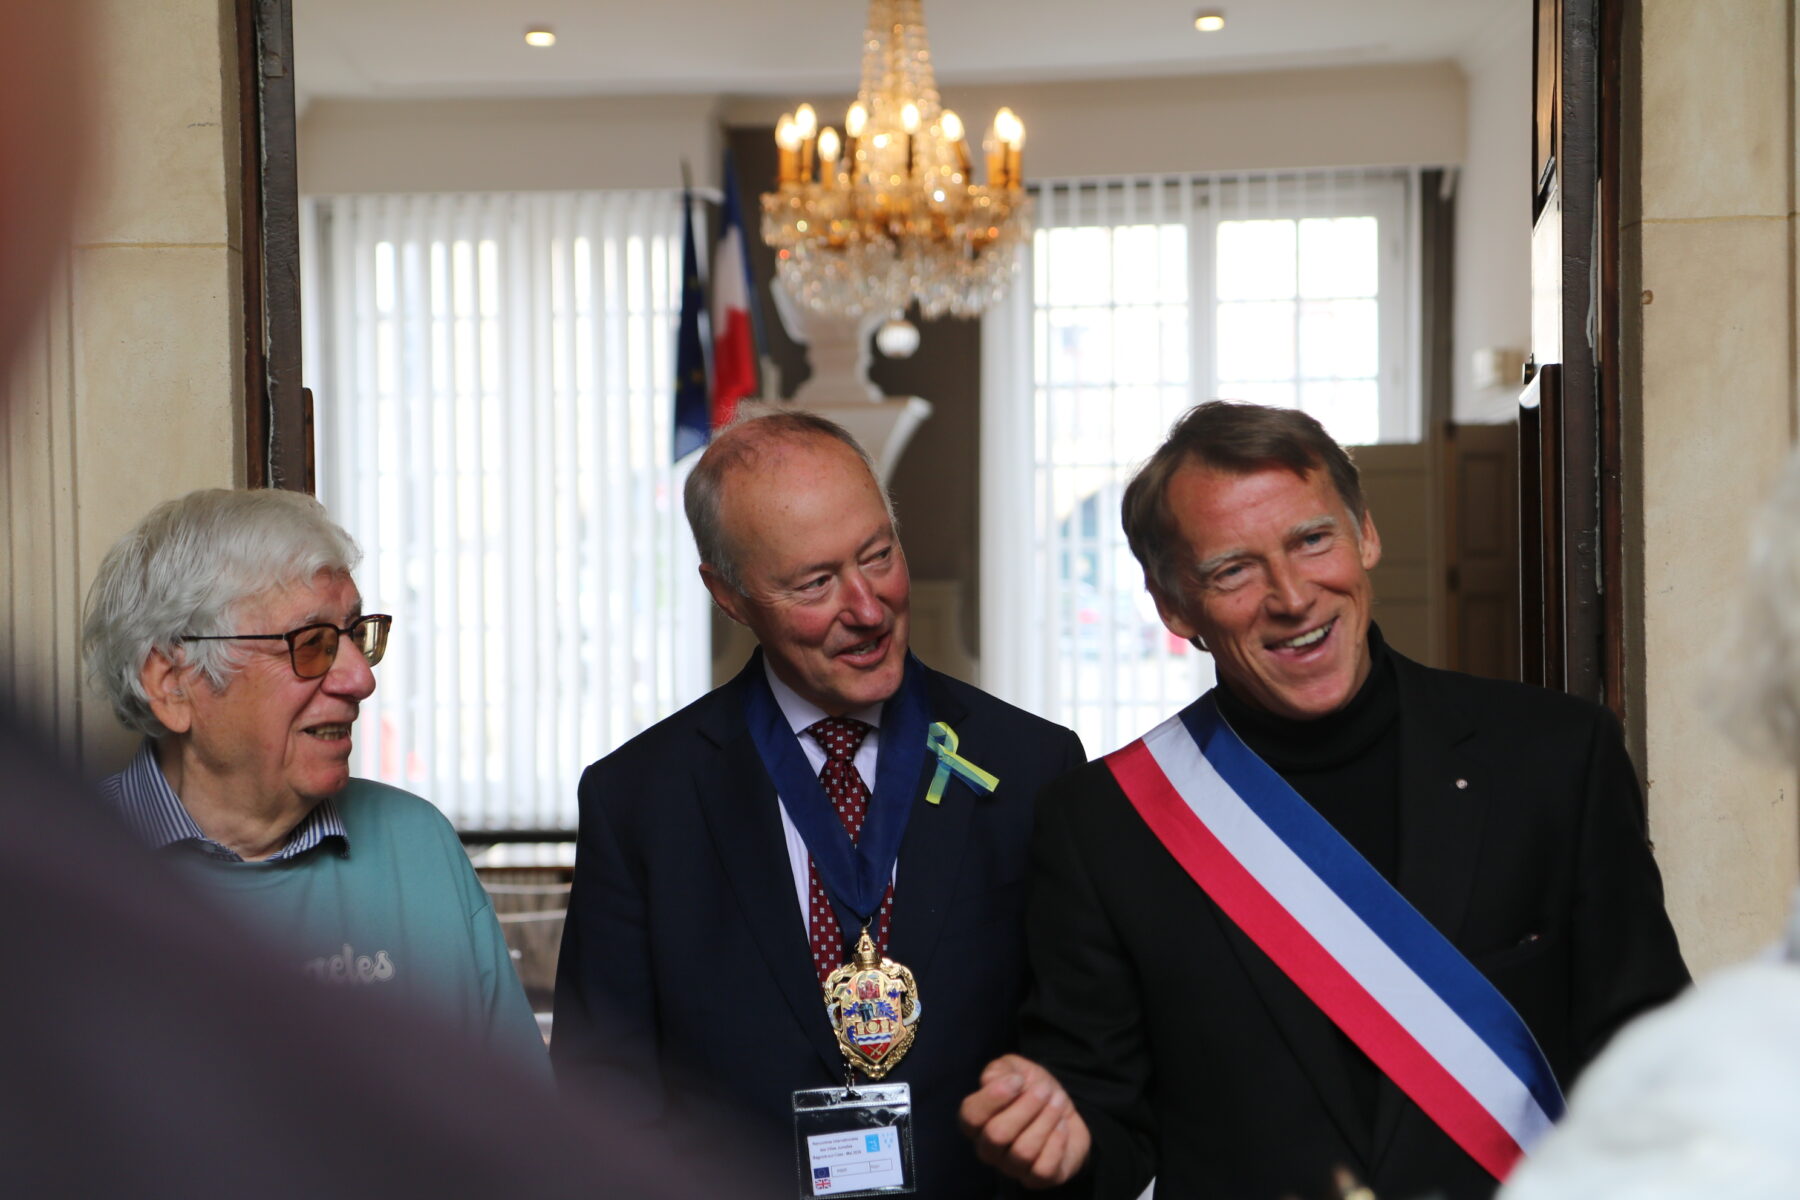 Le jumelage à l’honneur à Bagnols-sur-Cèze : visite de l’hôtel de ville, célébration de l’amitié franco-britannique et implication de la jeunesse